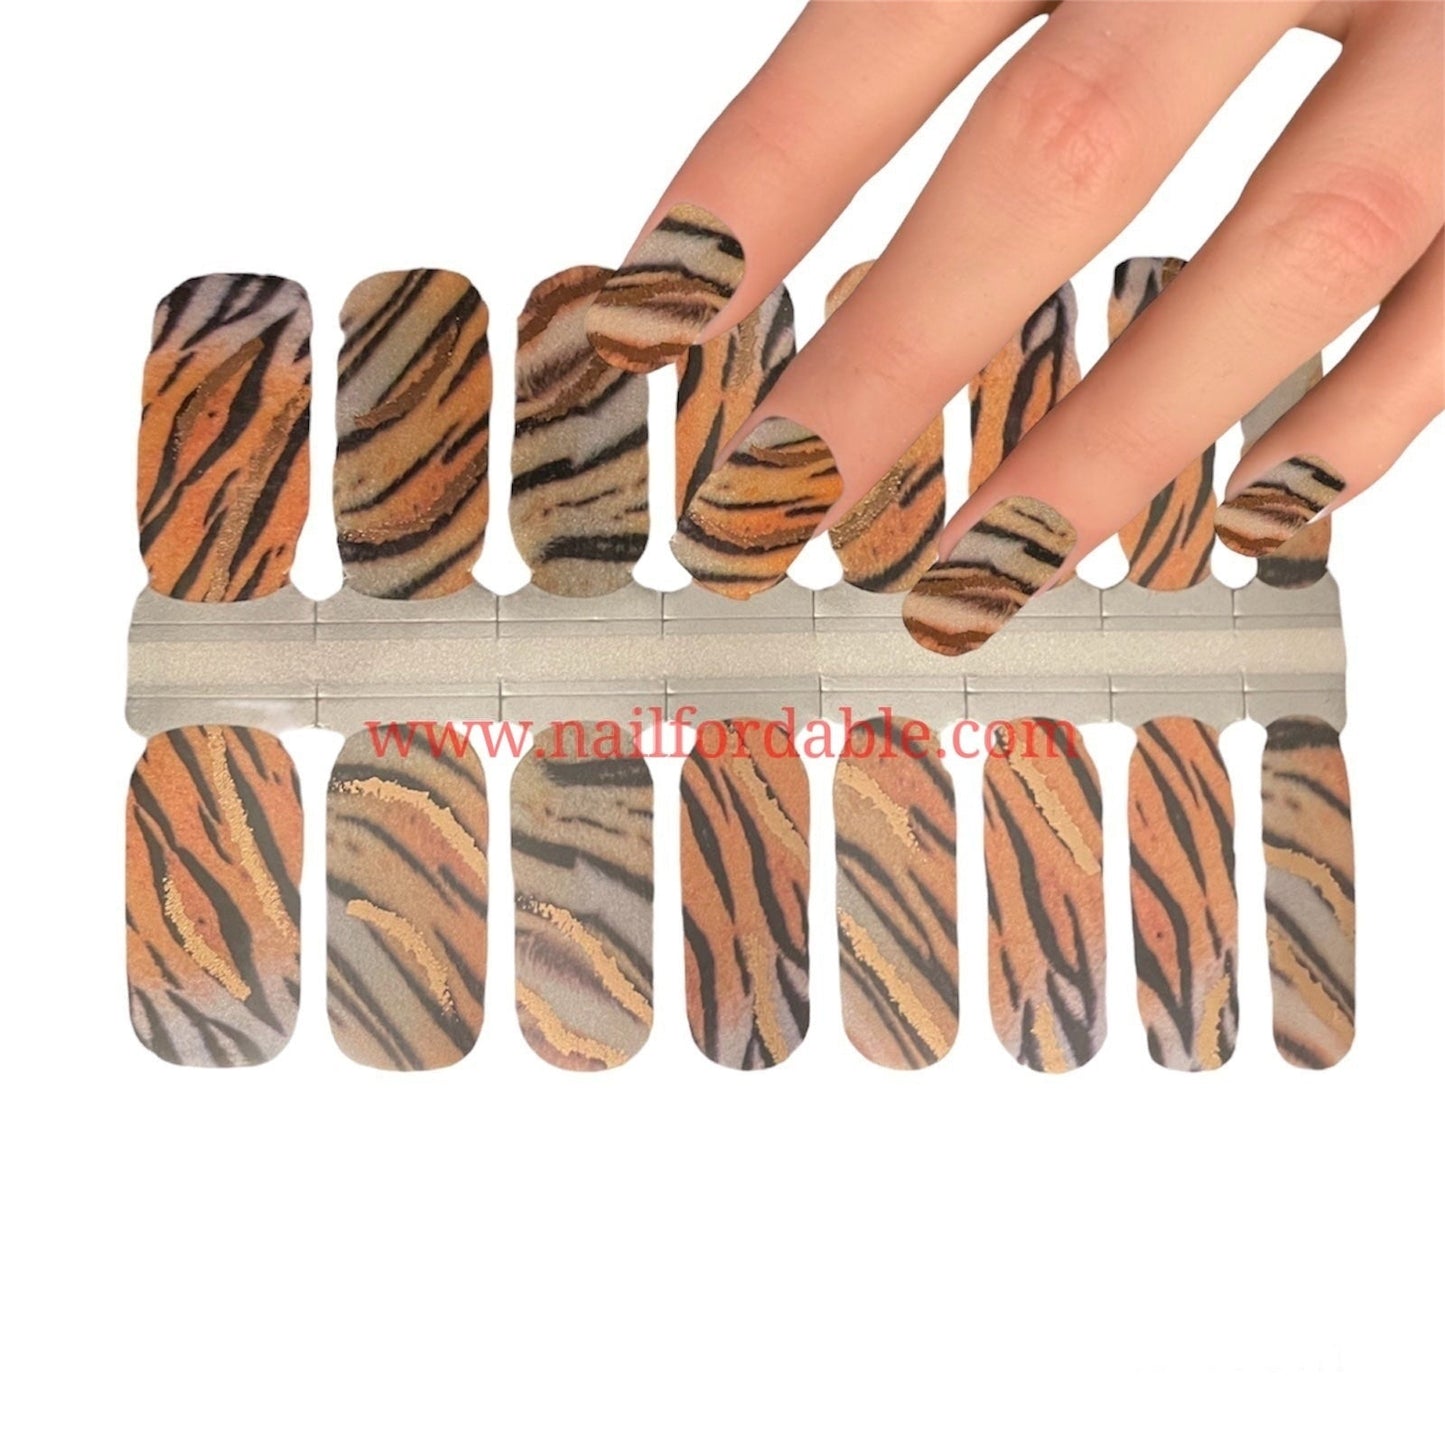 Tiger print Nail Wraps | Semi Cured Gel Wraps | Gel Nail Wraps |Nail Polish | Nail Stickers